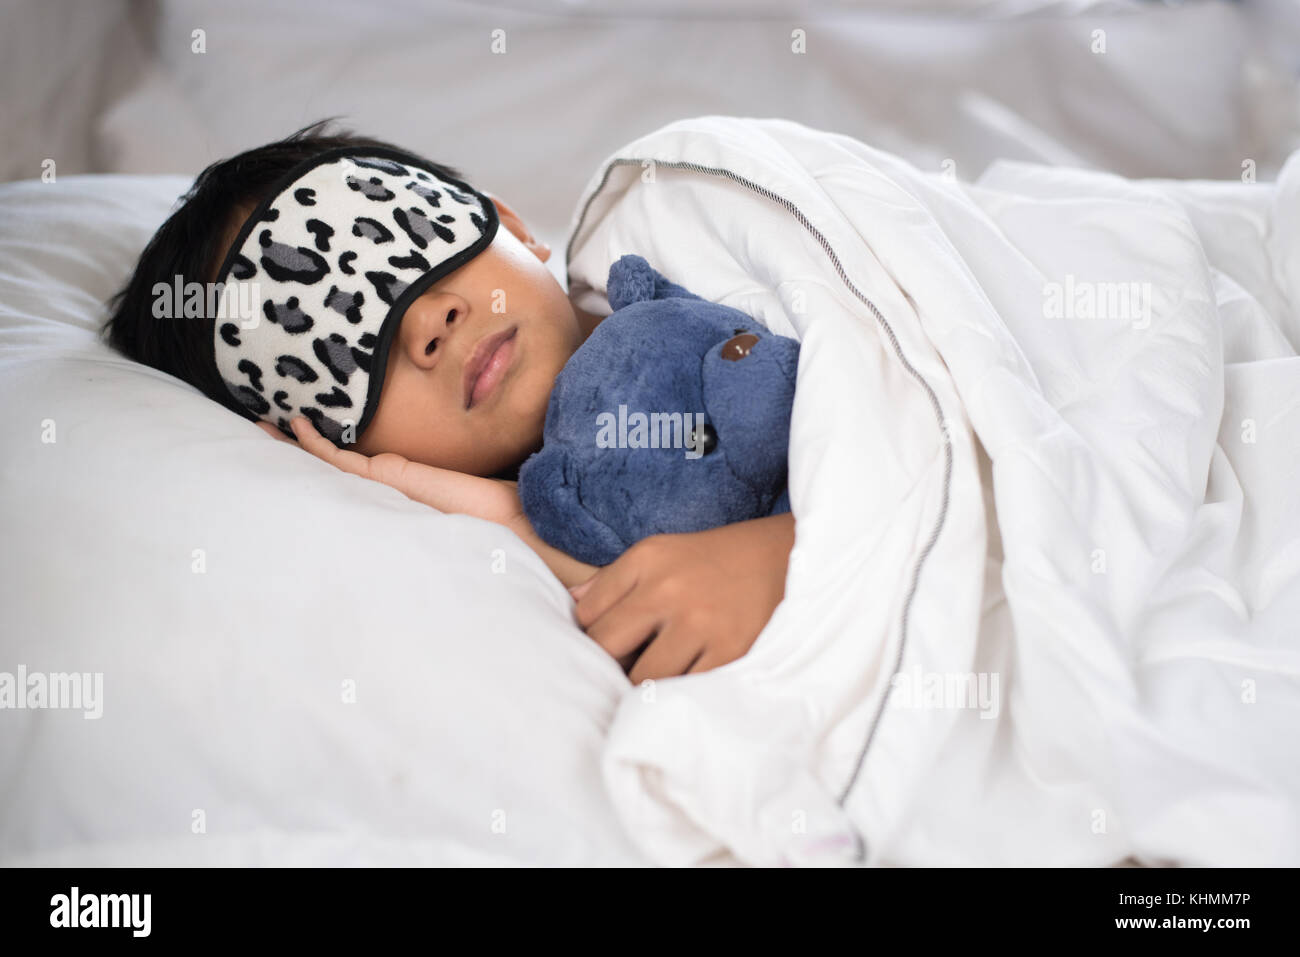 Bambino addormentato sul letto con Teddy bear cuscino bianco e fogli di indossare la maschera di sospensione.boy addormentarsi in mattinata.concetto del sonno Foto Stock